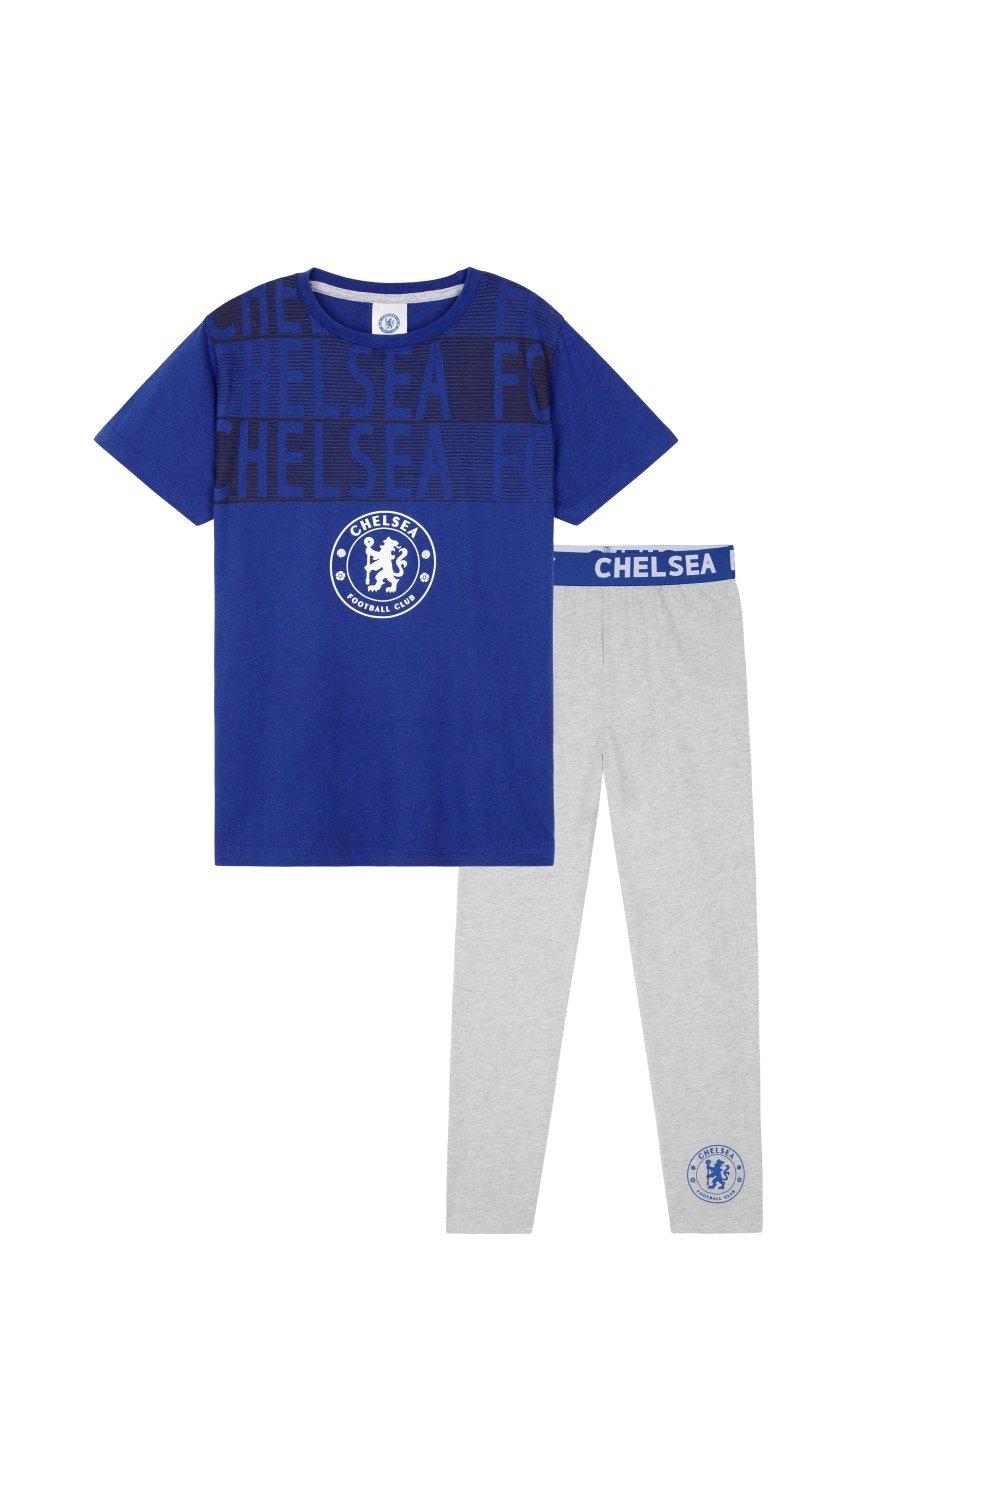 Пижамный комплект — брюки и футболка Chelsea FC, мультиколор